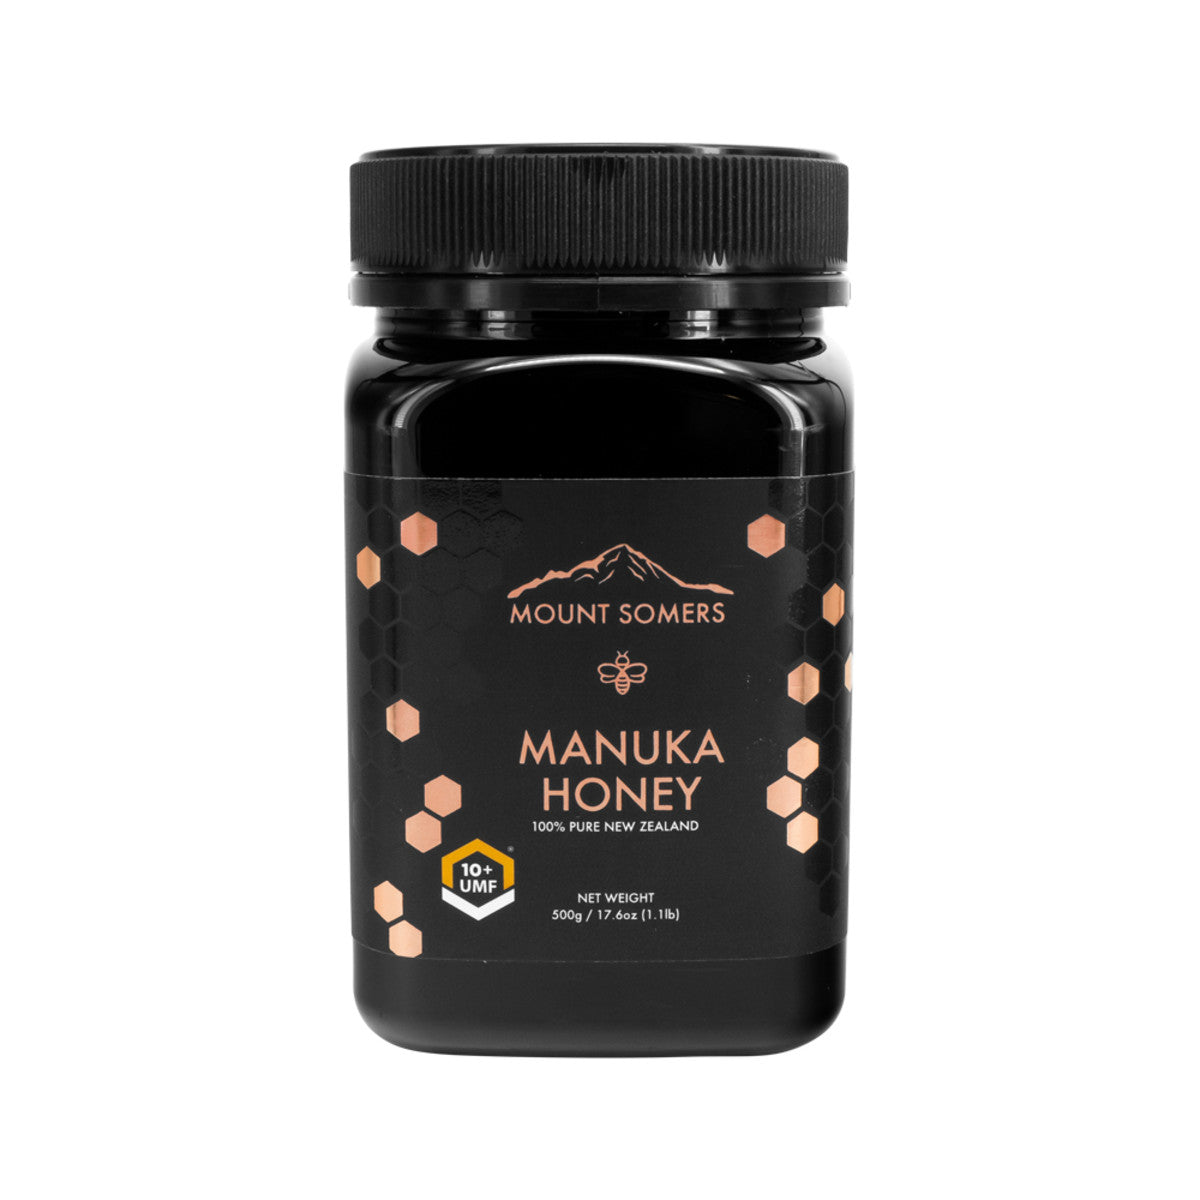 Mount Somers - Manuka Honey UMF10 Plus